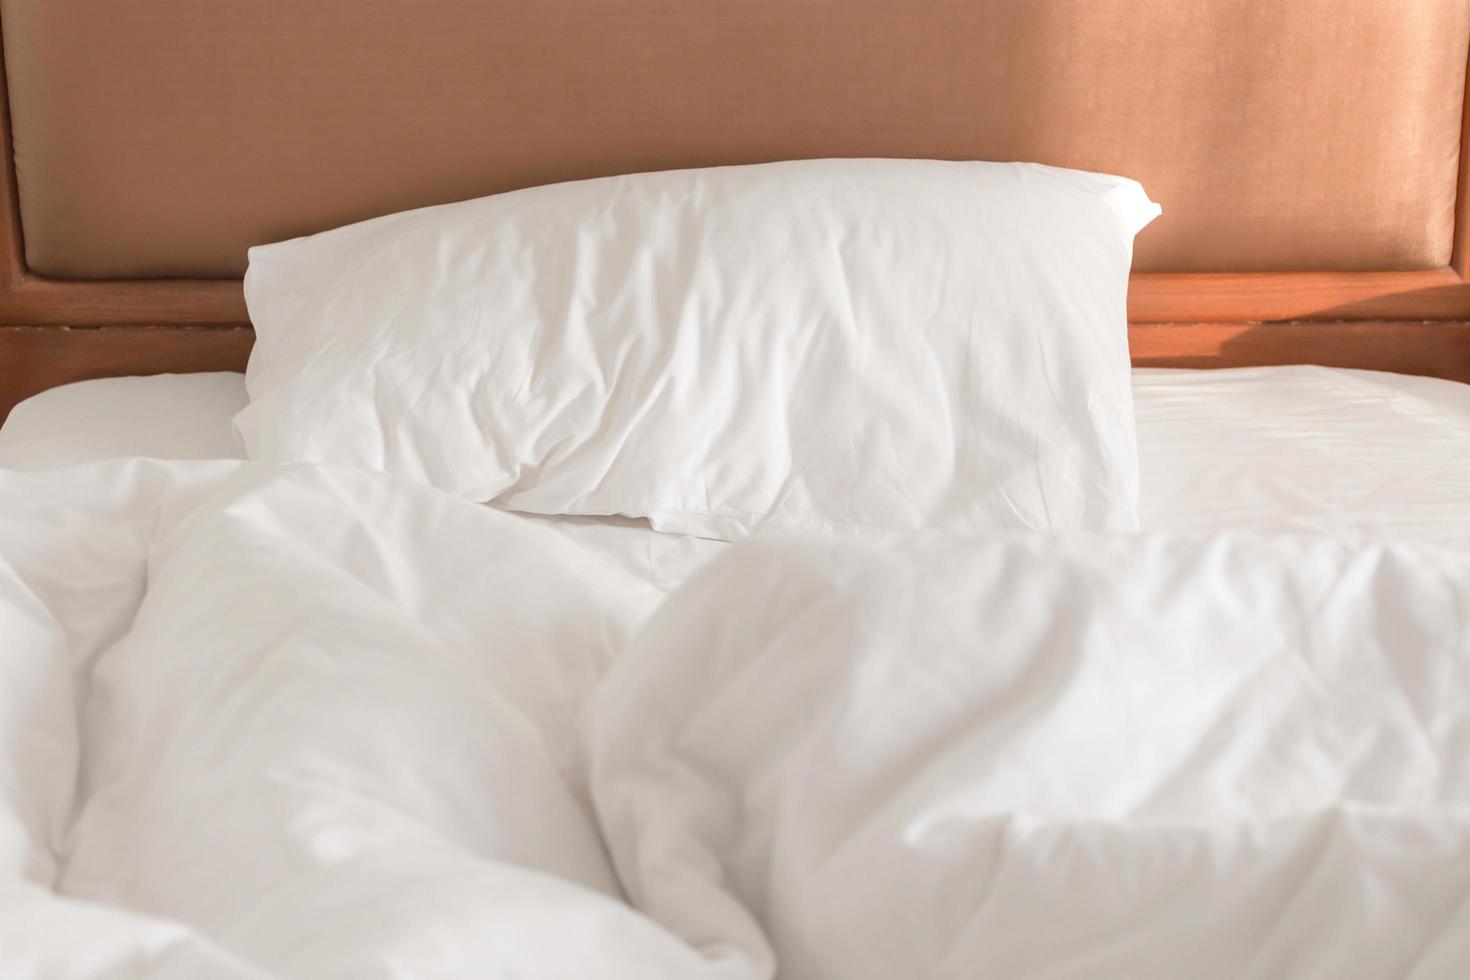 vit bekväm kudde på sängdekoration interiör i sovrummet, vita kuddar för hemutrymme, komfort och sängkoncept foto